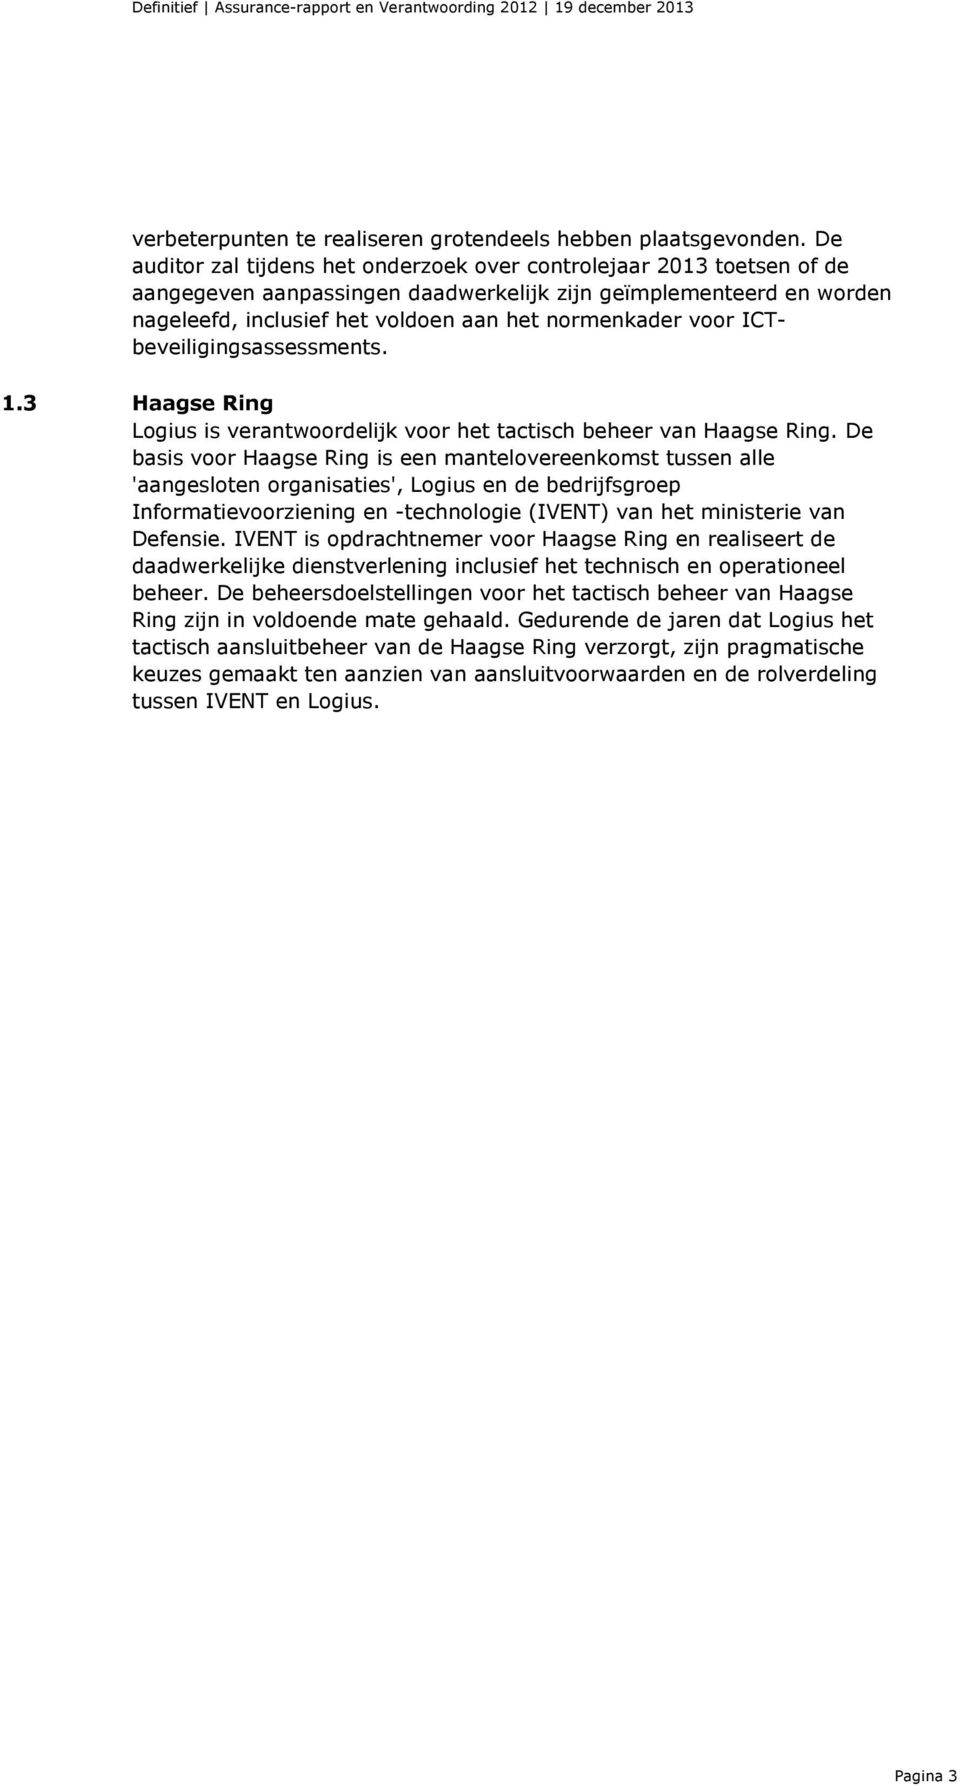 voor ICTbeveiligingsassessments. 1.3 Haagse Ring Logius is verantwoordelijk voor het tactisch beheer van Haagse Ring.